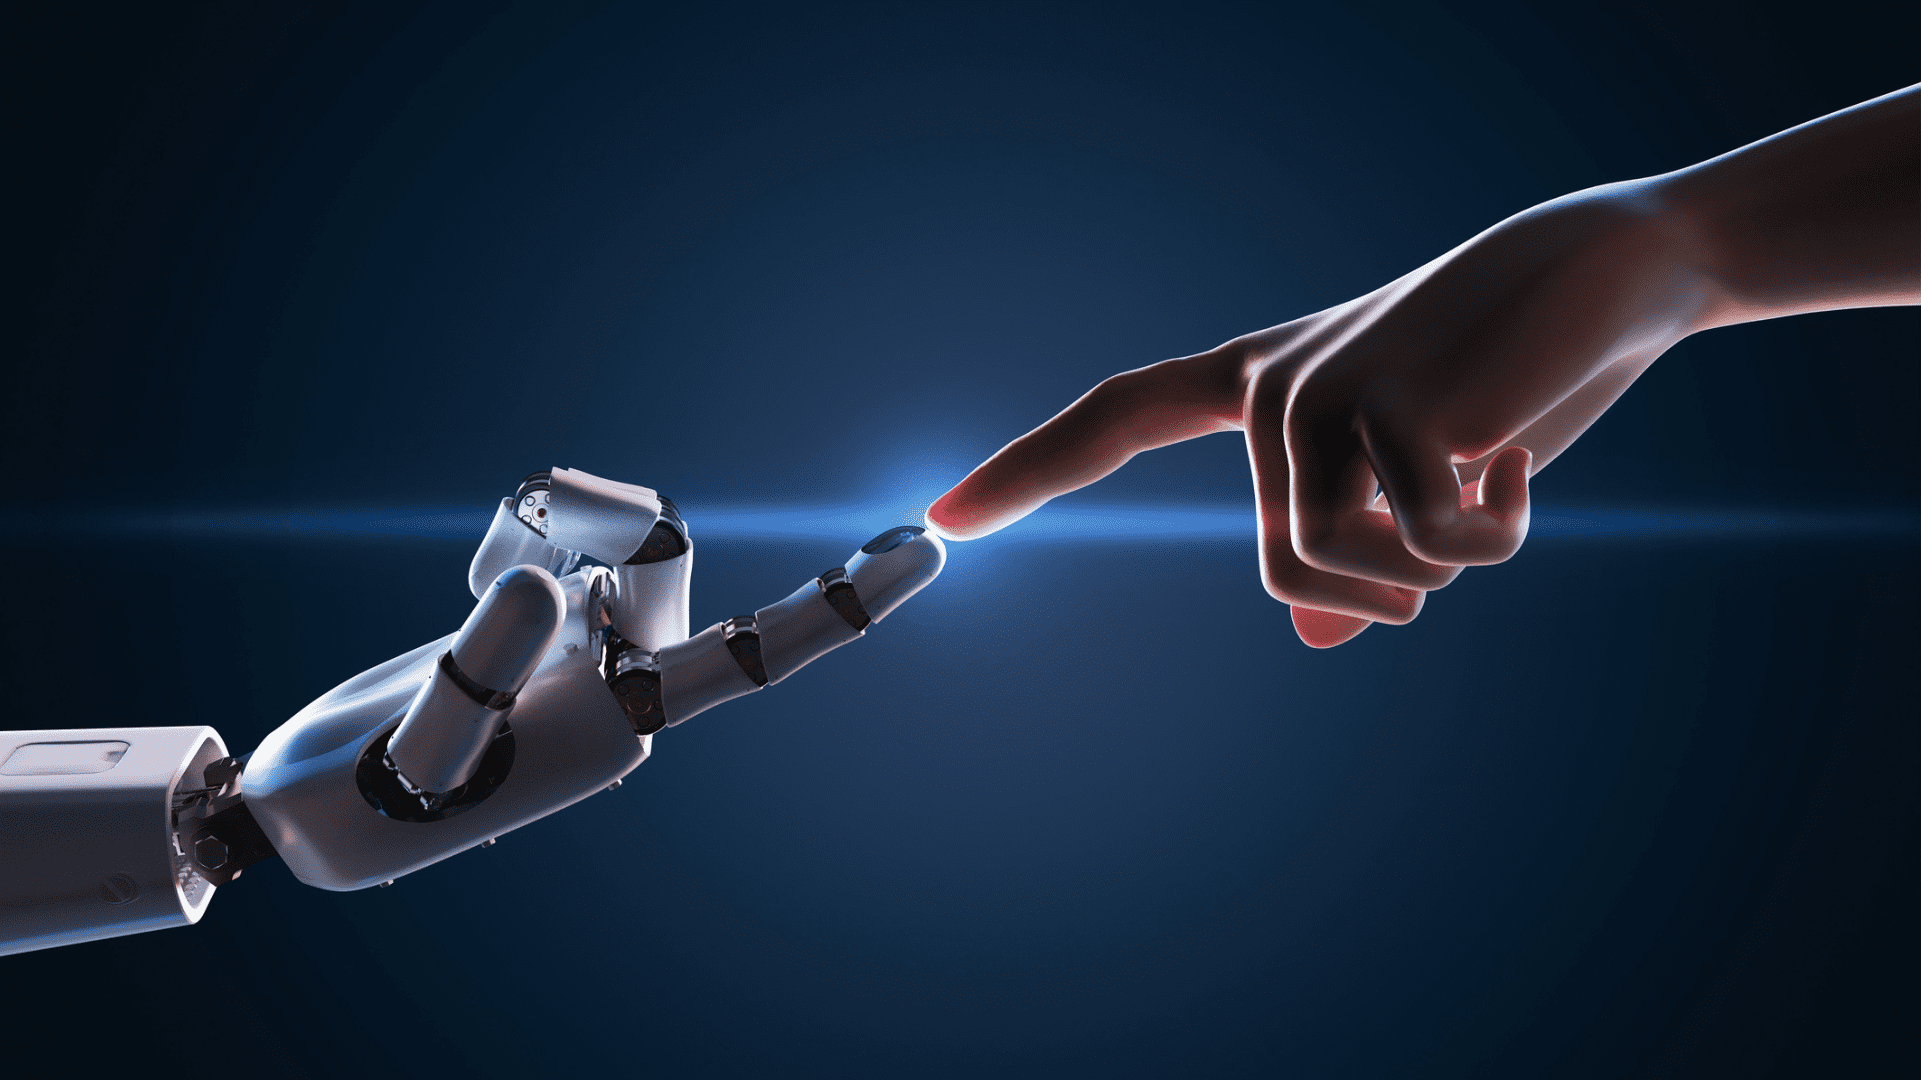 Nesta imagem podemos ver uma mão humana tocando a mão de um robô, simbolizando a inteligência artificial.